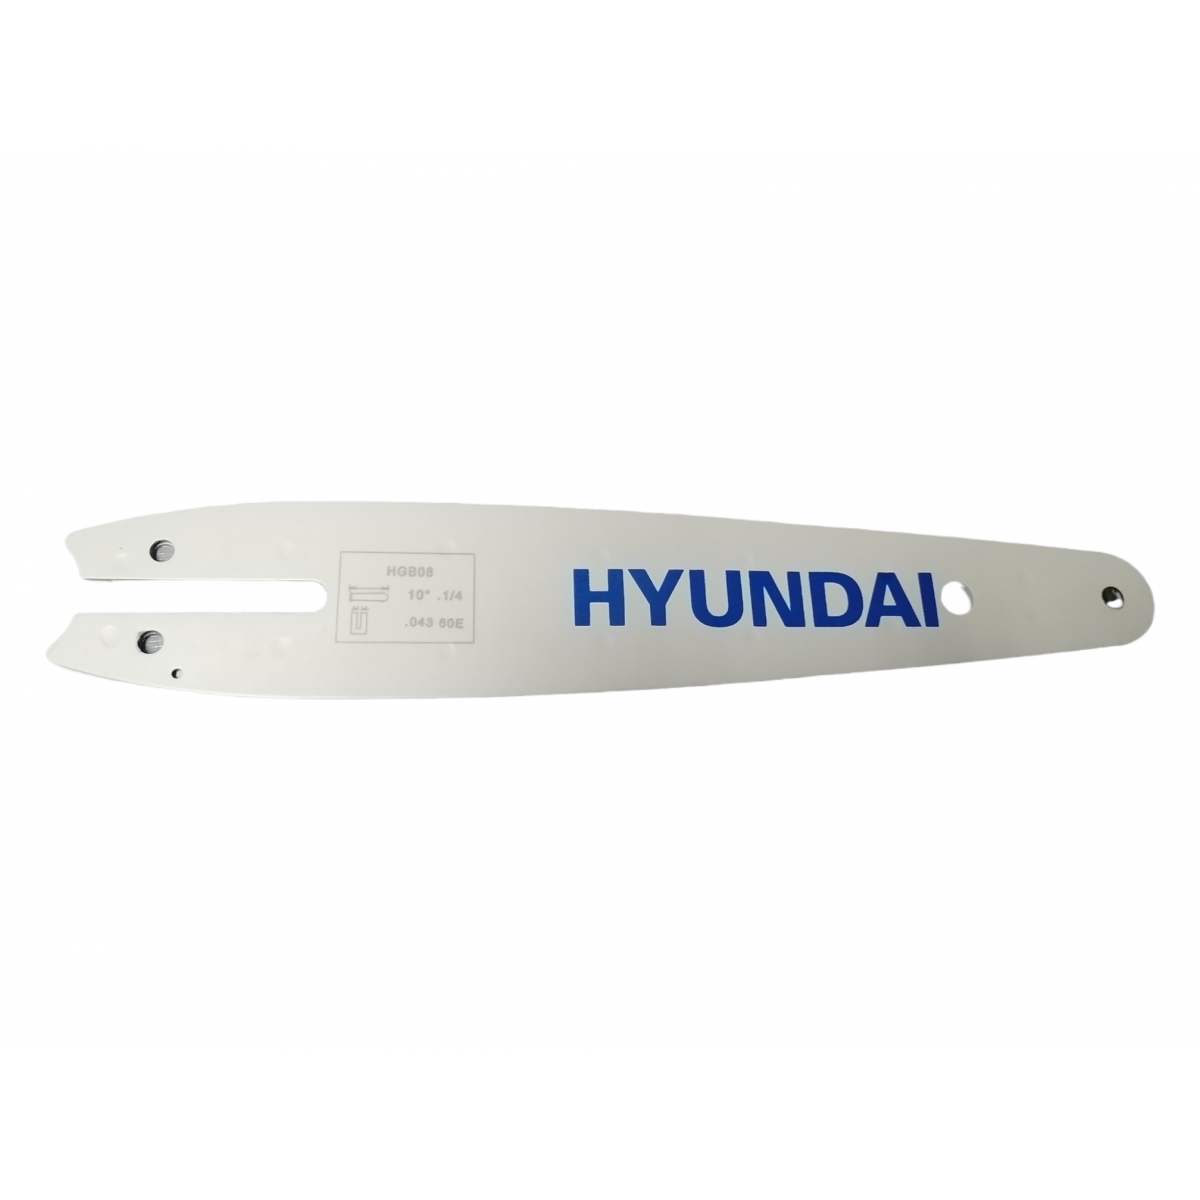 Λάμα Αλυσοπρίονου HGB08  25cm/10" Hyundai-MaShop.gr